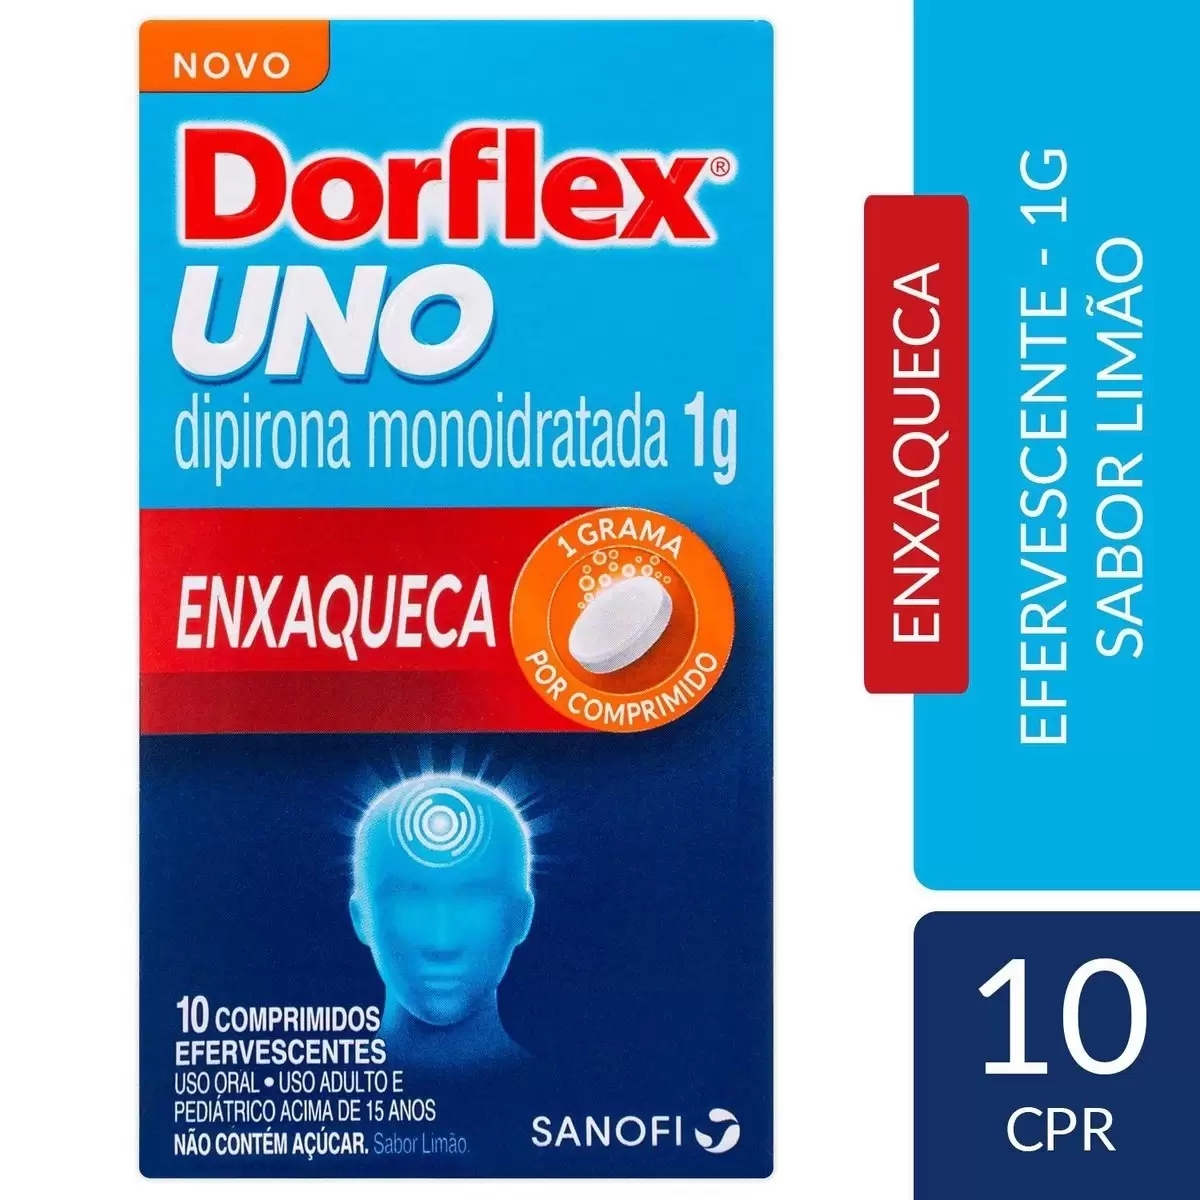 Dorflex Uno Enxaqueca 10 Comprimidos Efervescentes